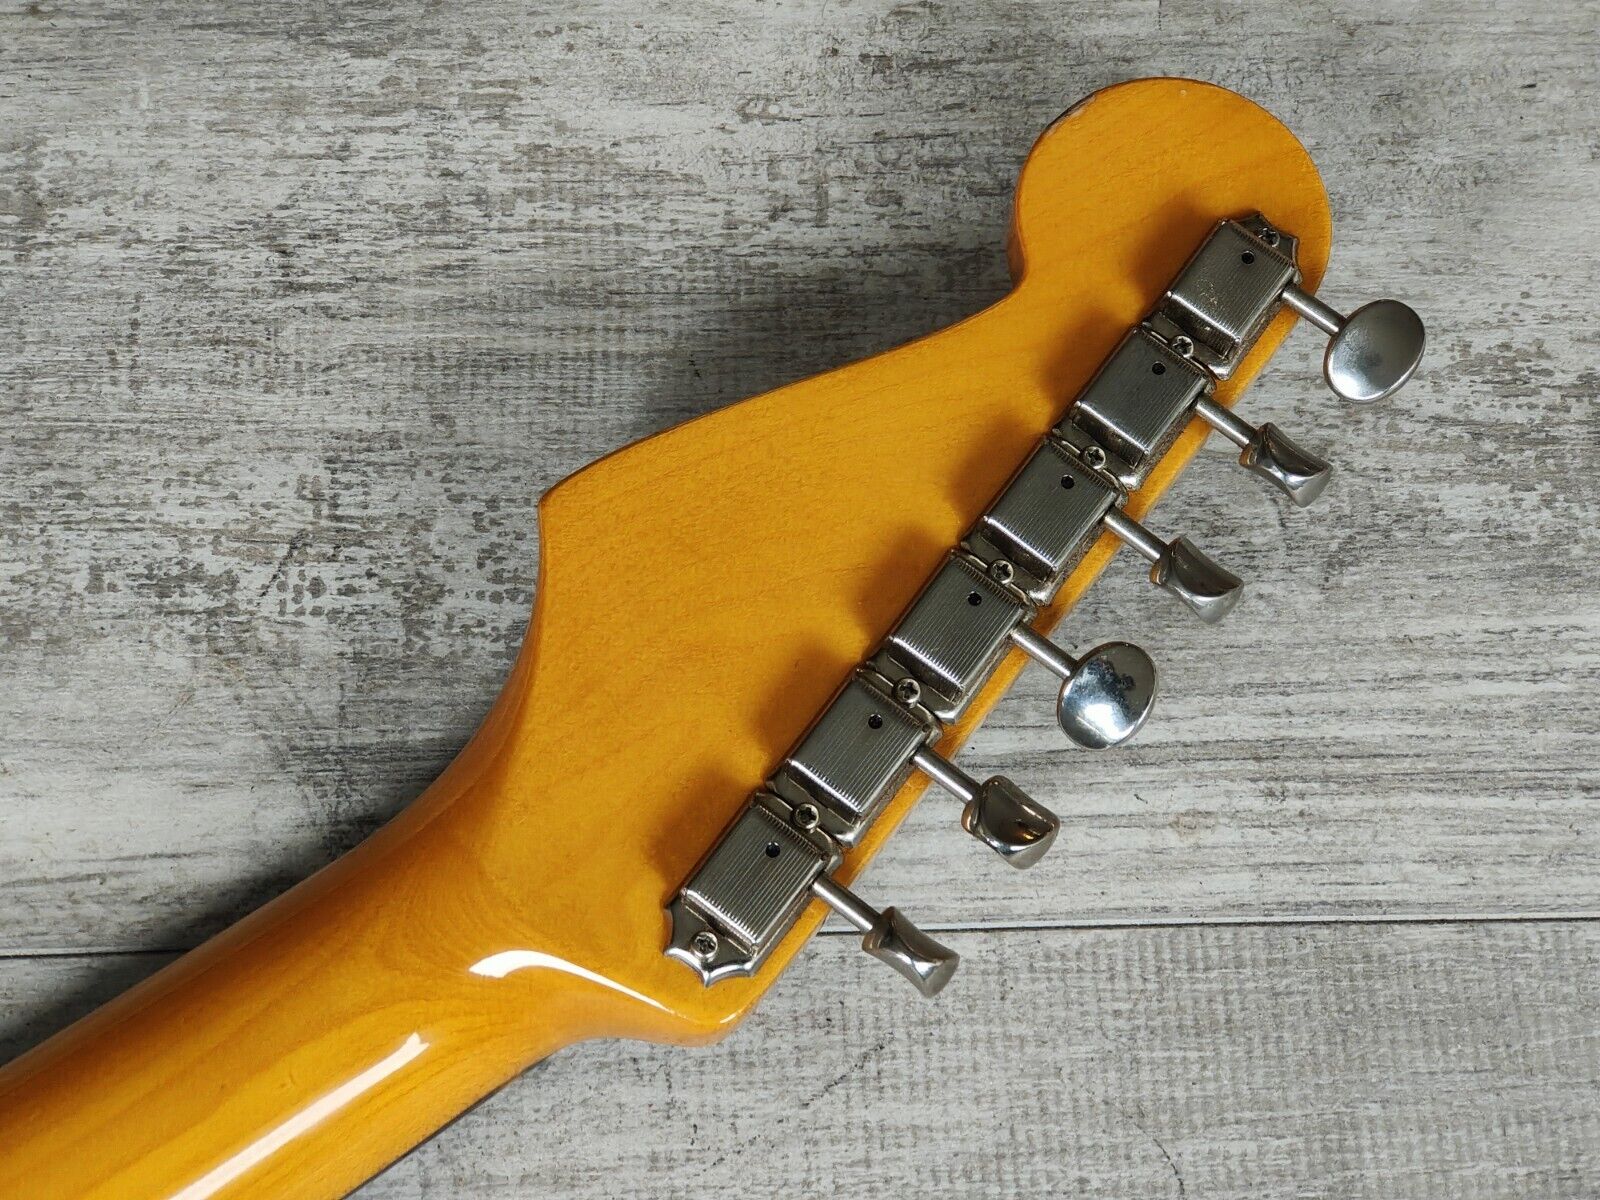 2002 Fender Japan ST62-58US '62 Reissue Stratocaster w/US Pickups (Sunburst)